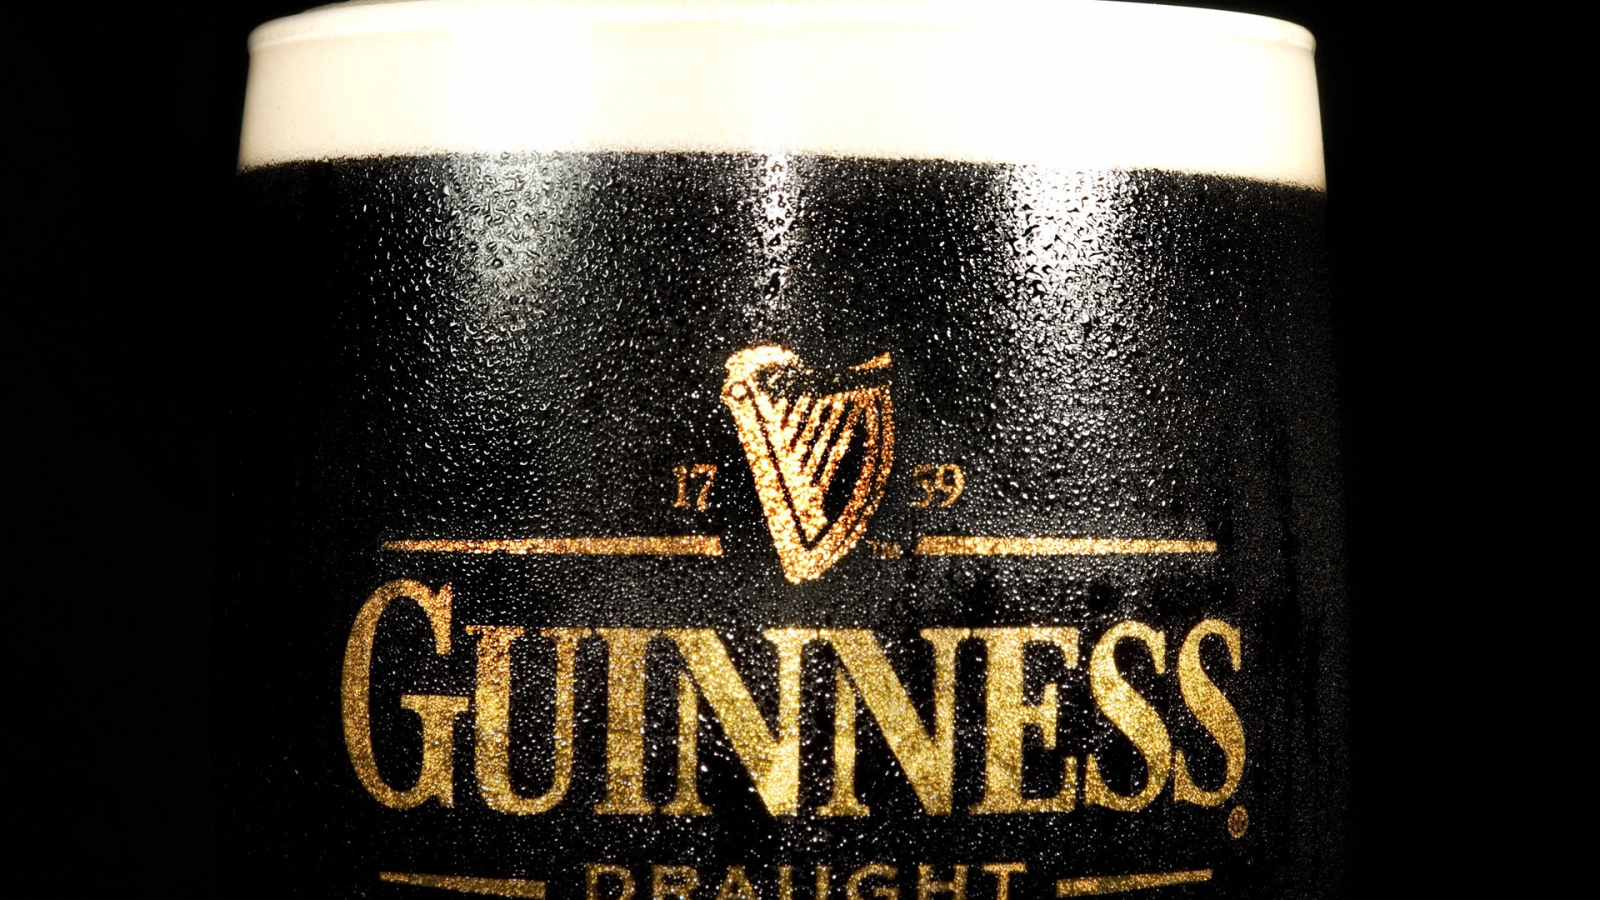 Guinness Draught for 1600 x 900 HDTV resolution